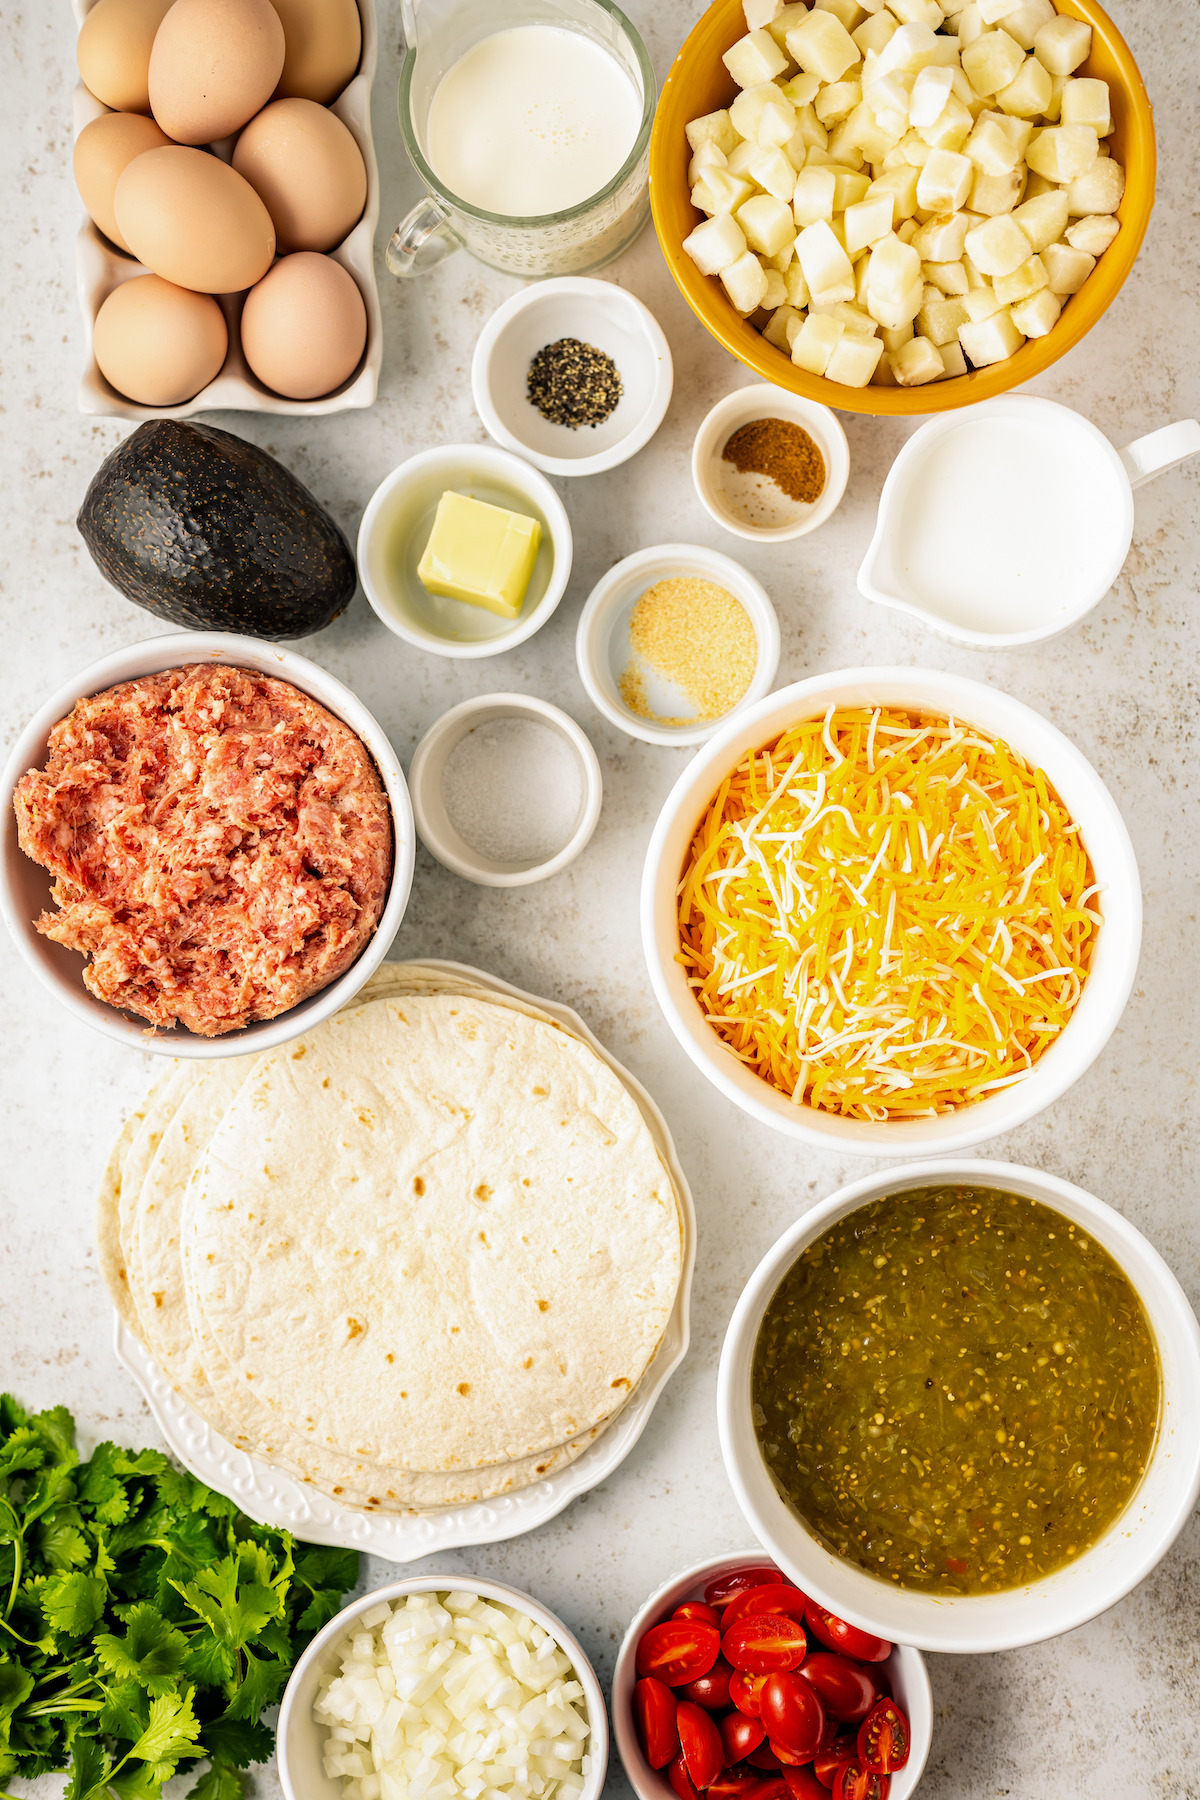 Ingredients for egg enchiladas.